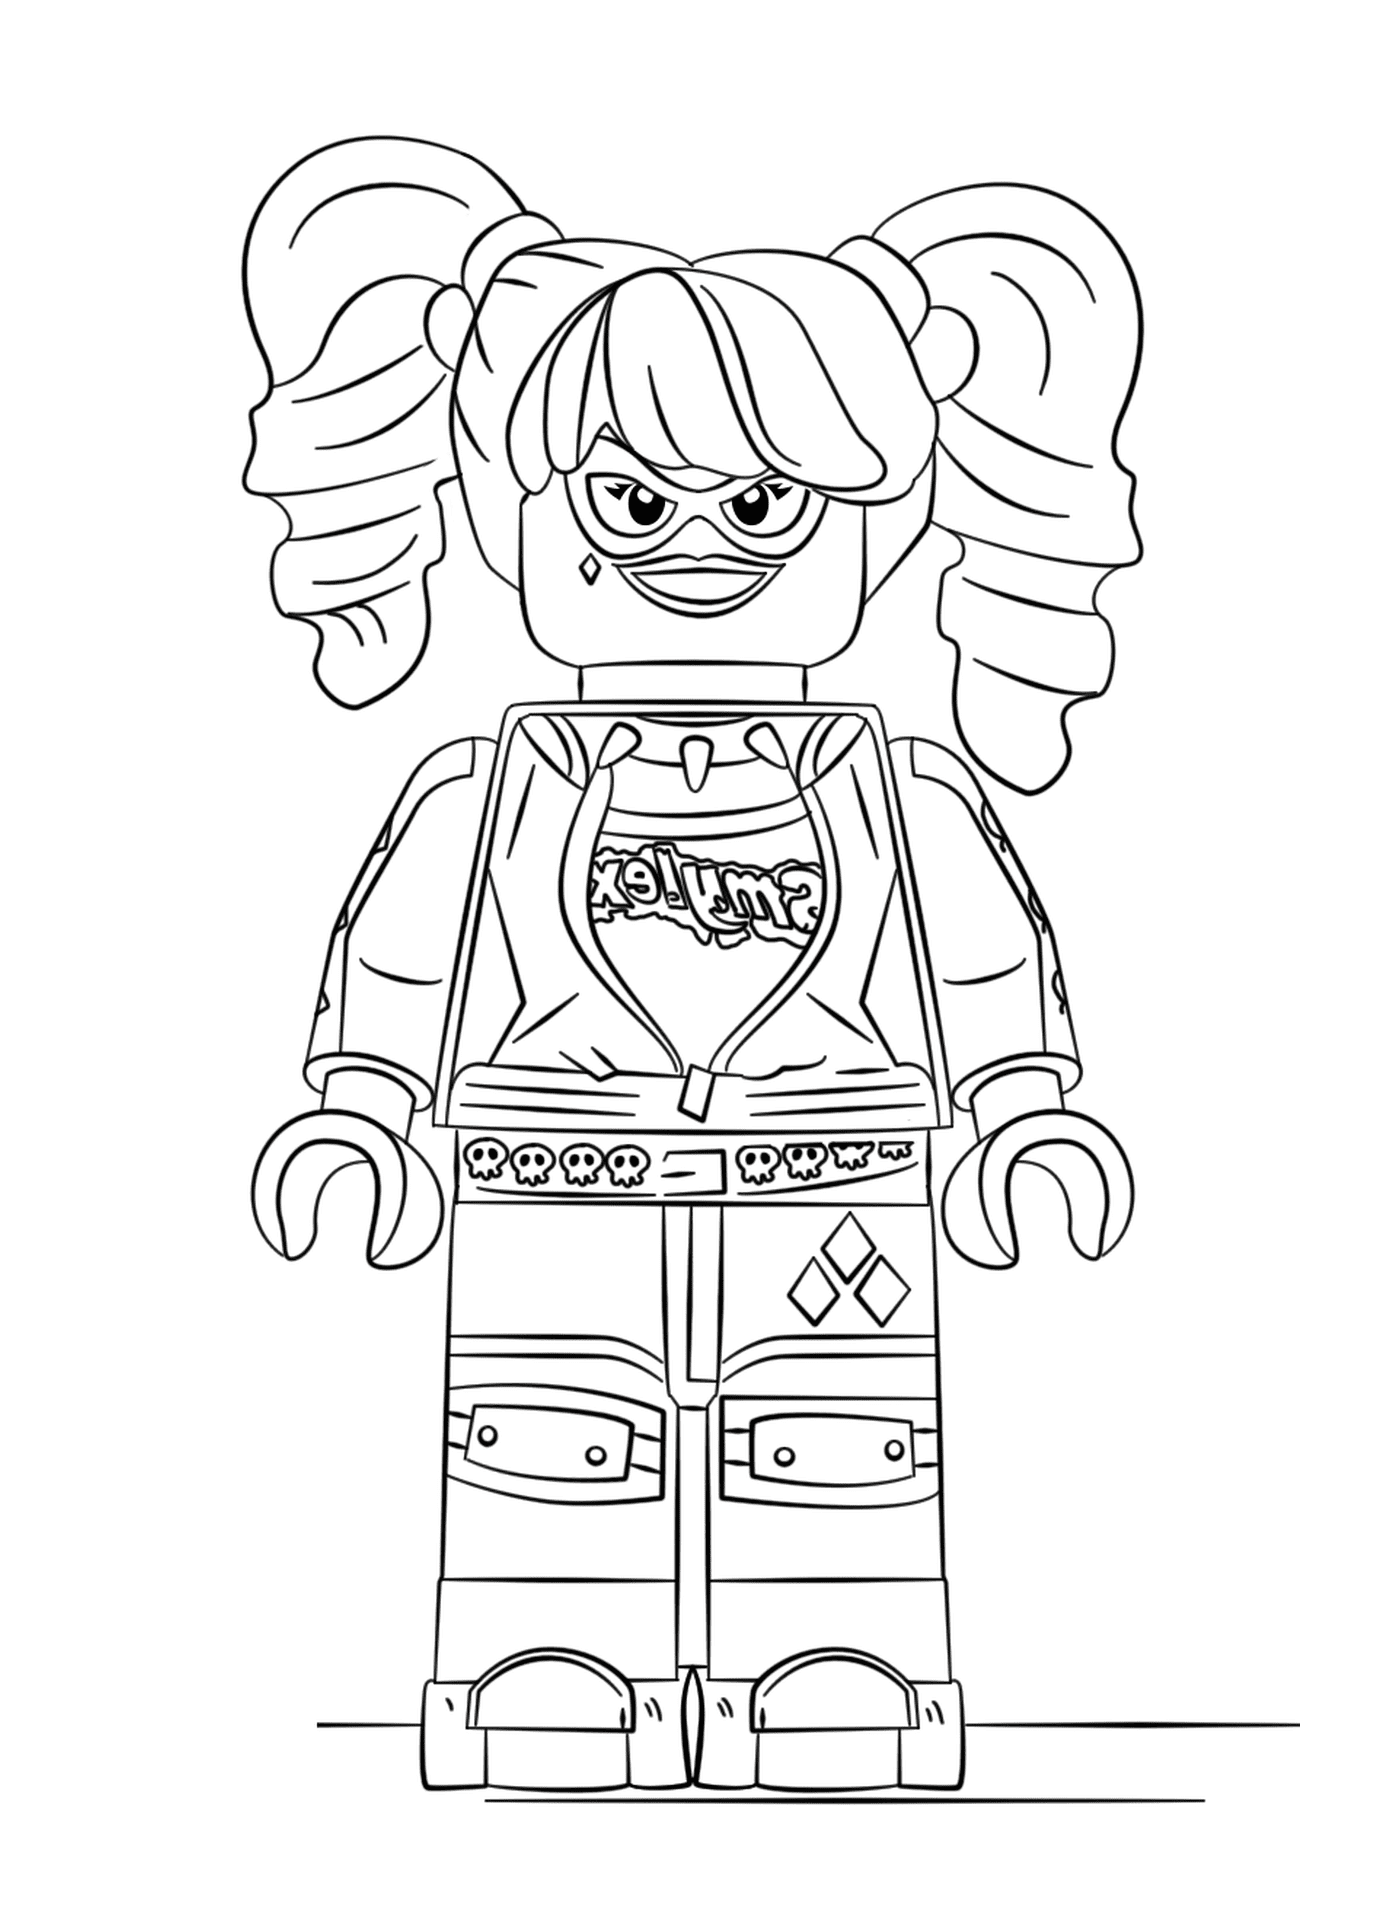  Лего-девушка с улыбкой на лице 